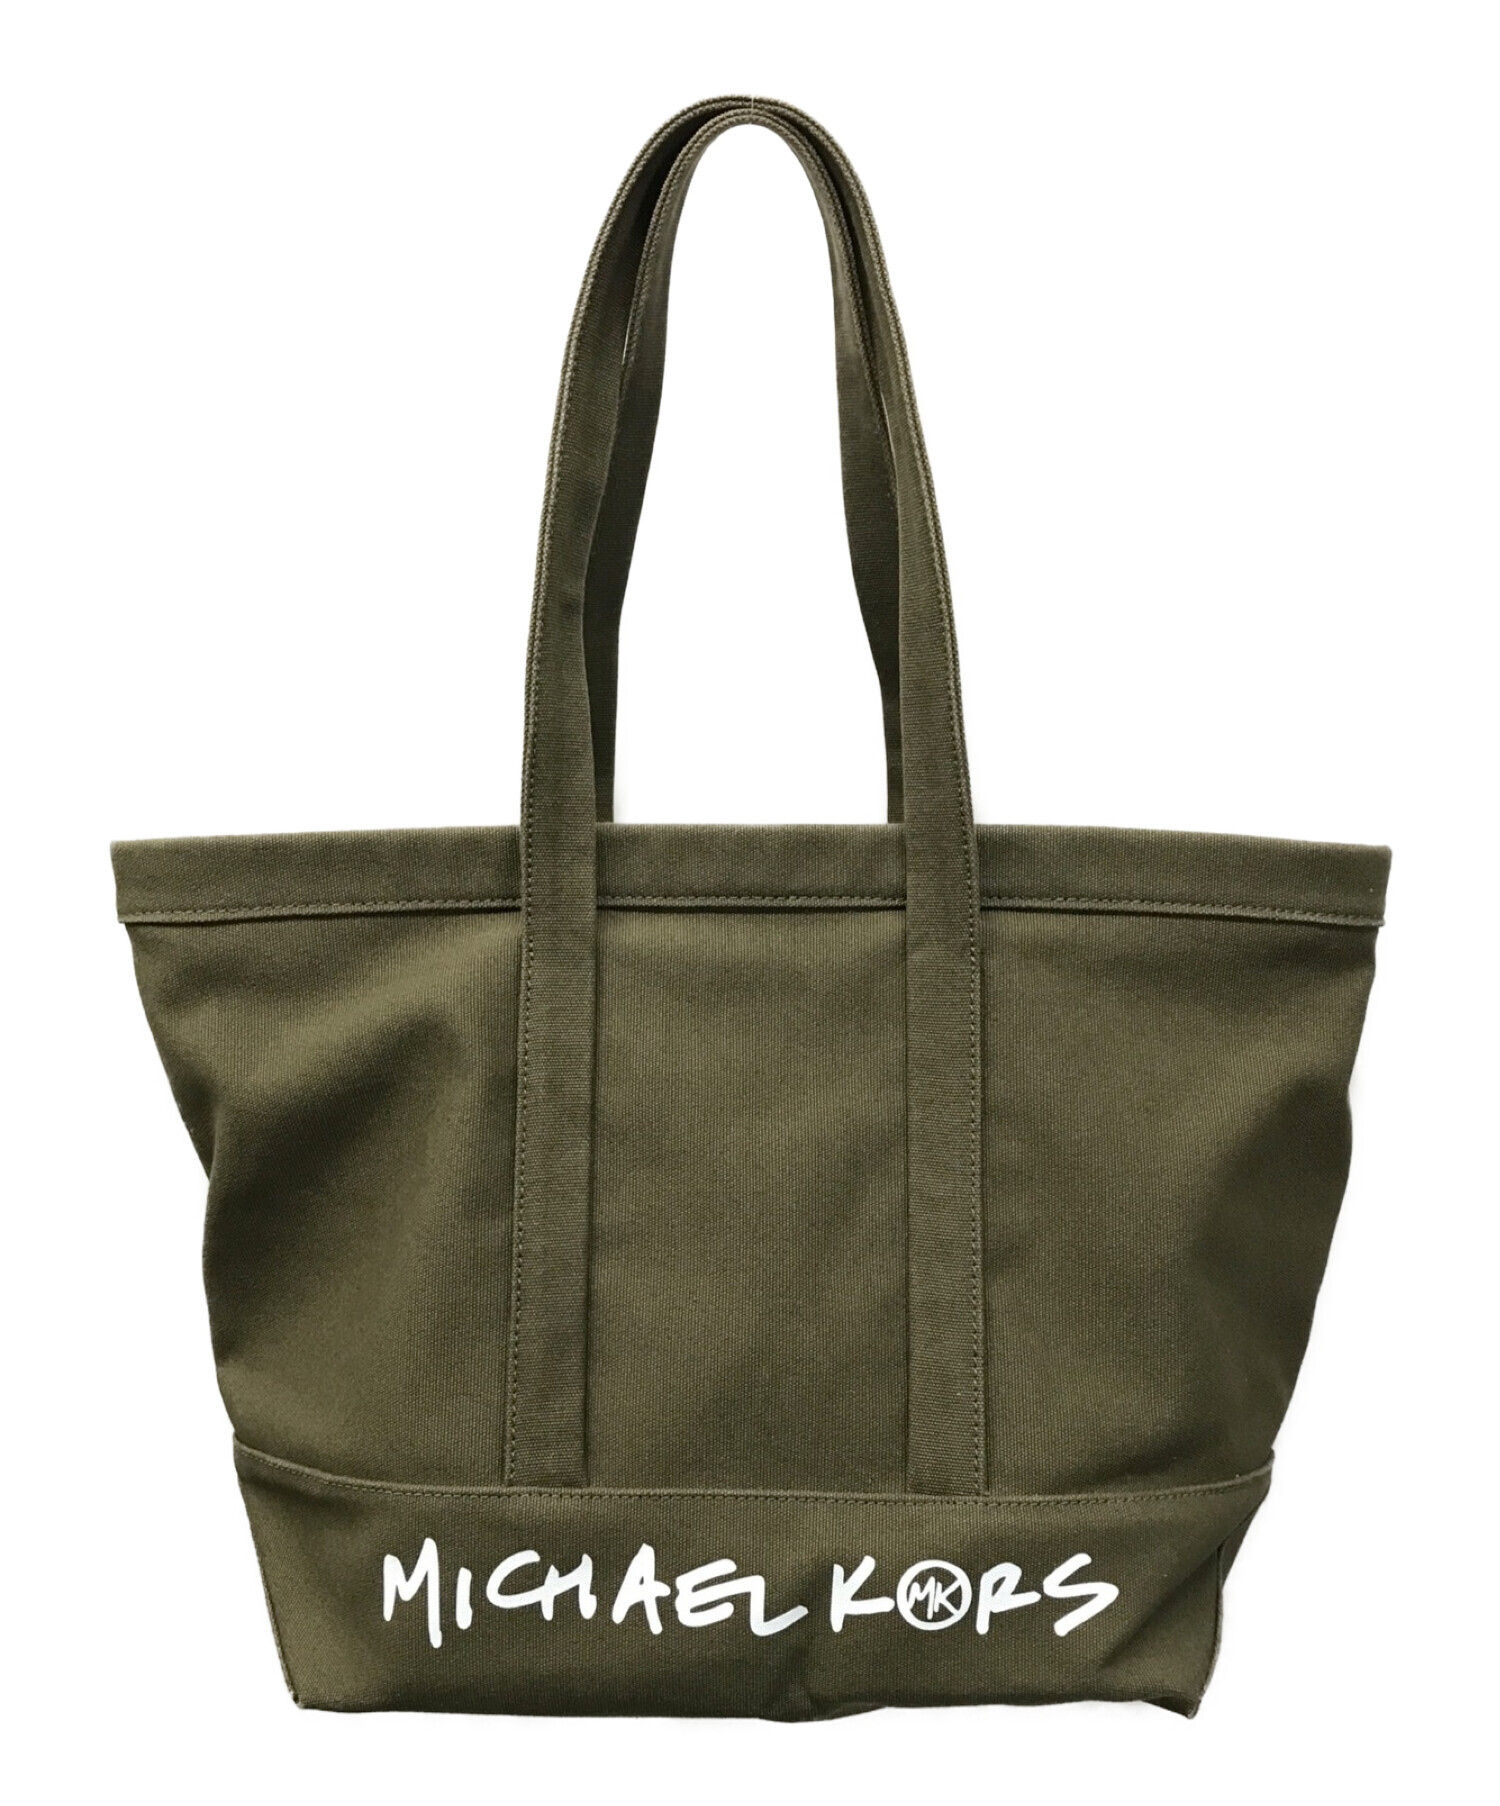 MICHAEL KORS (マイケルコース) THE MICHAEL BAG キャンバストート ラージ カーキ